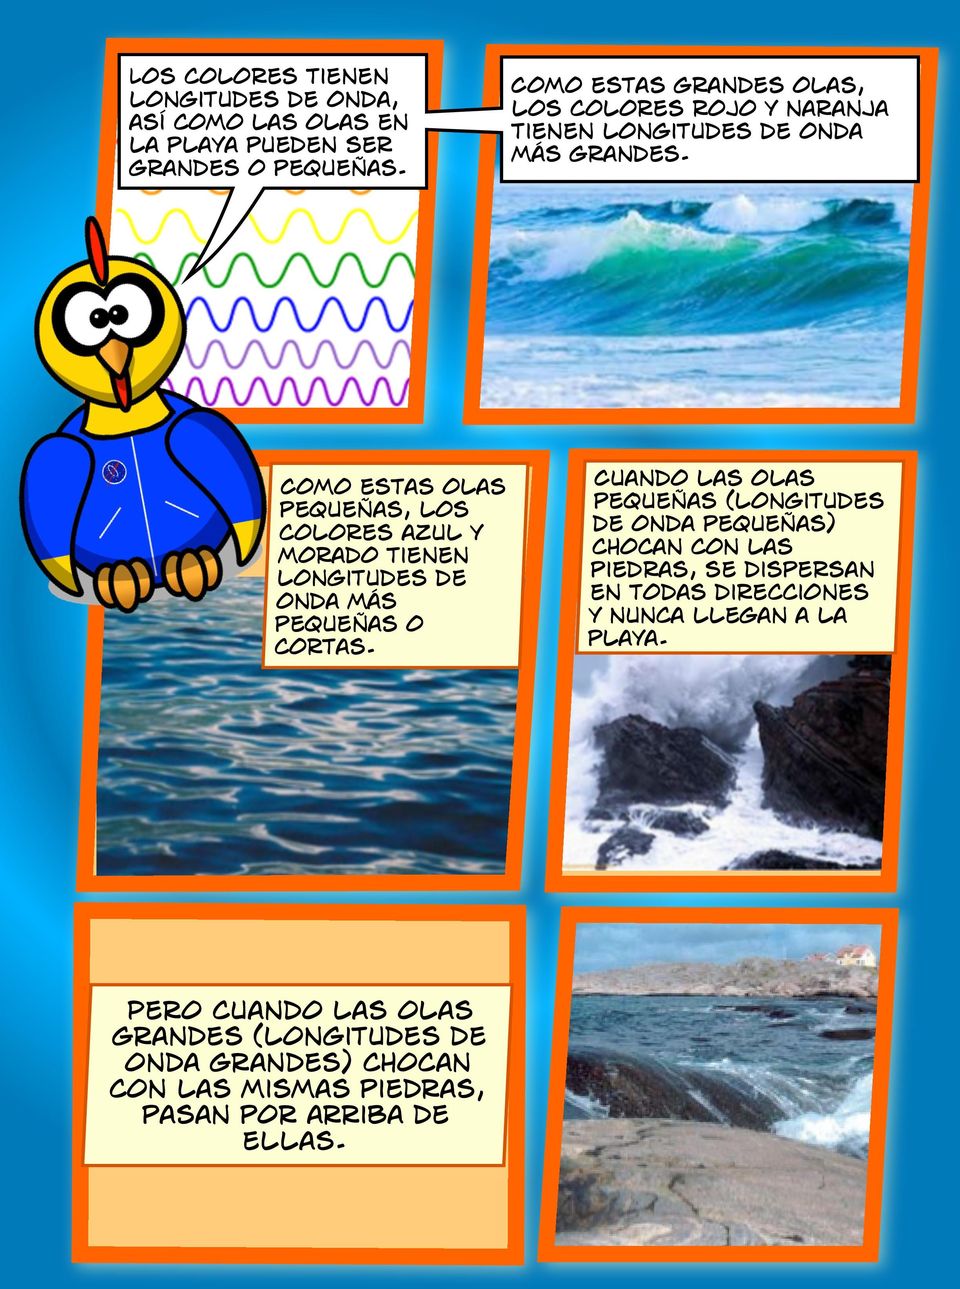 Como estas olas pequeñas, los colores azul y morado tienen longitudes de onda más pequeñas o cortas.